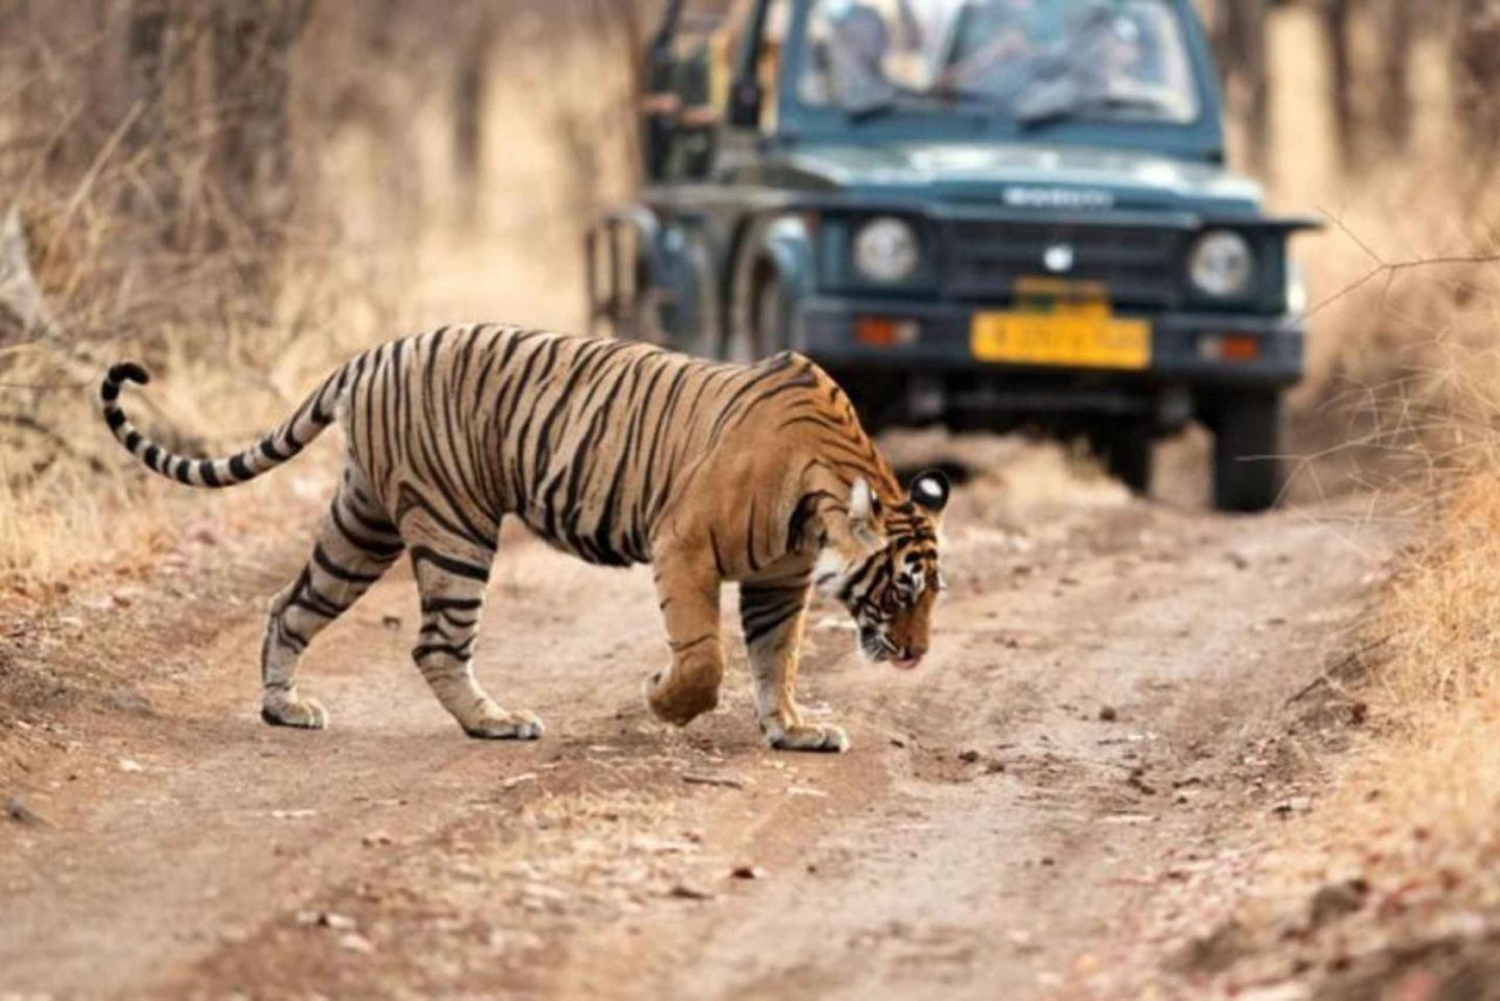 Da Jaipur: Escursione privata a Ranthambore con safari delle tigri